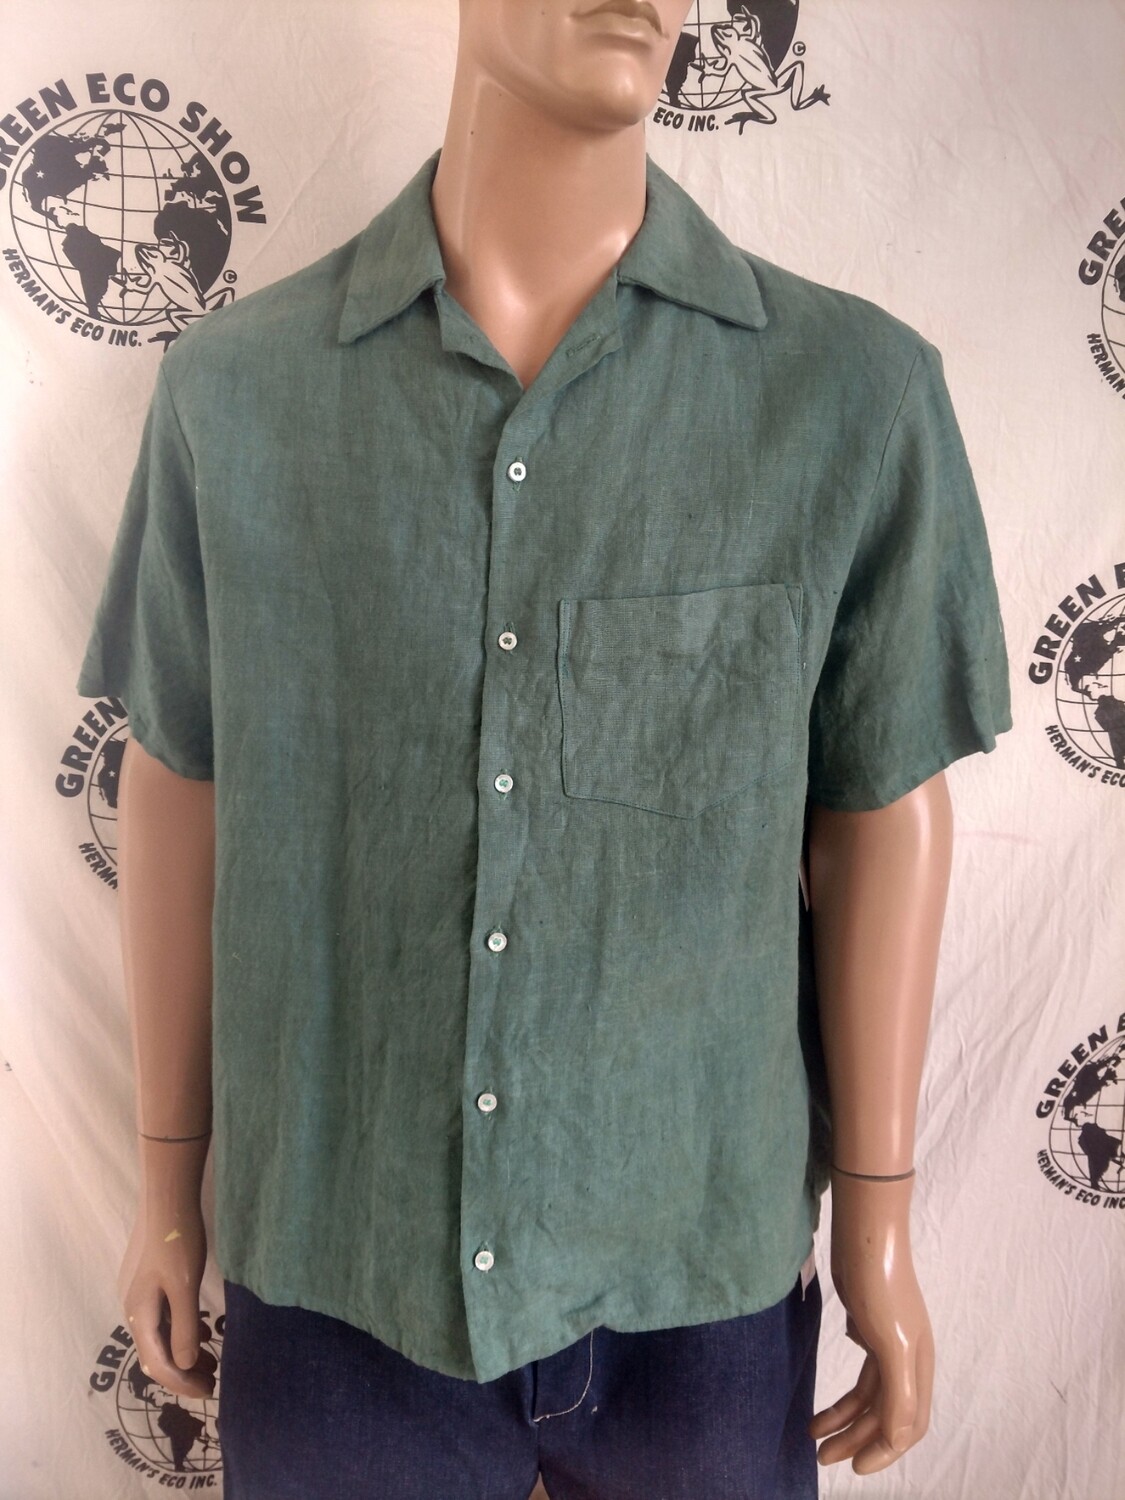 Hermans Hemp XL Hand dyed Green shirt short Sleeve USA